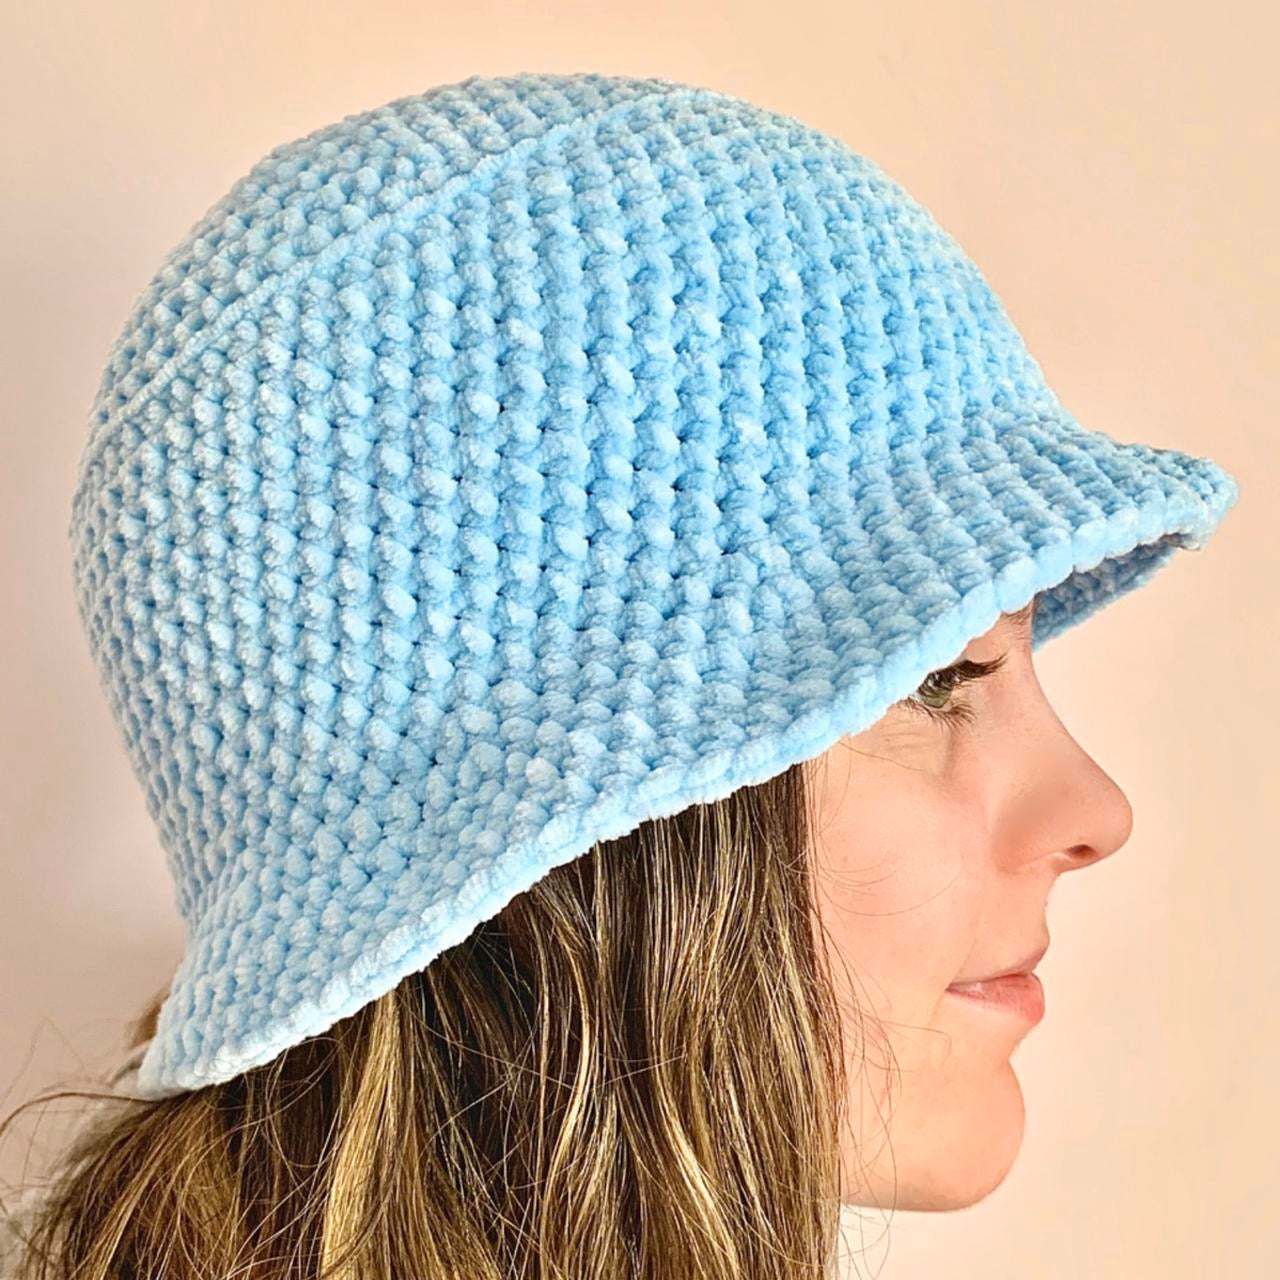 Handmade crushed velvet crochet bucket hat in baby blue